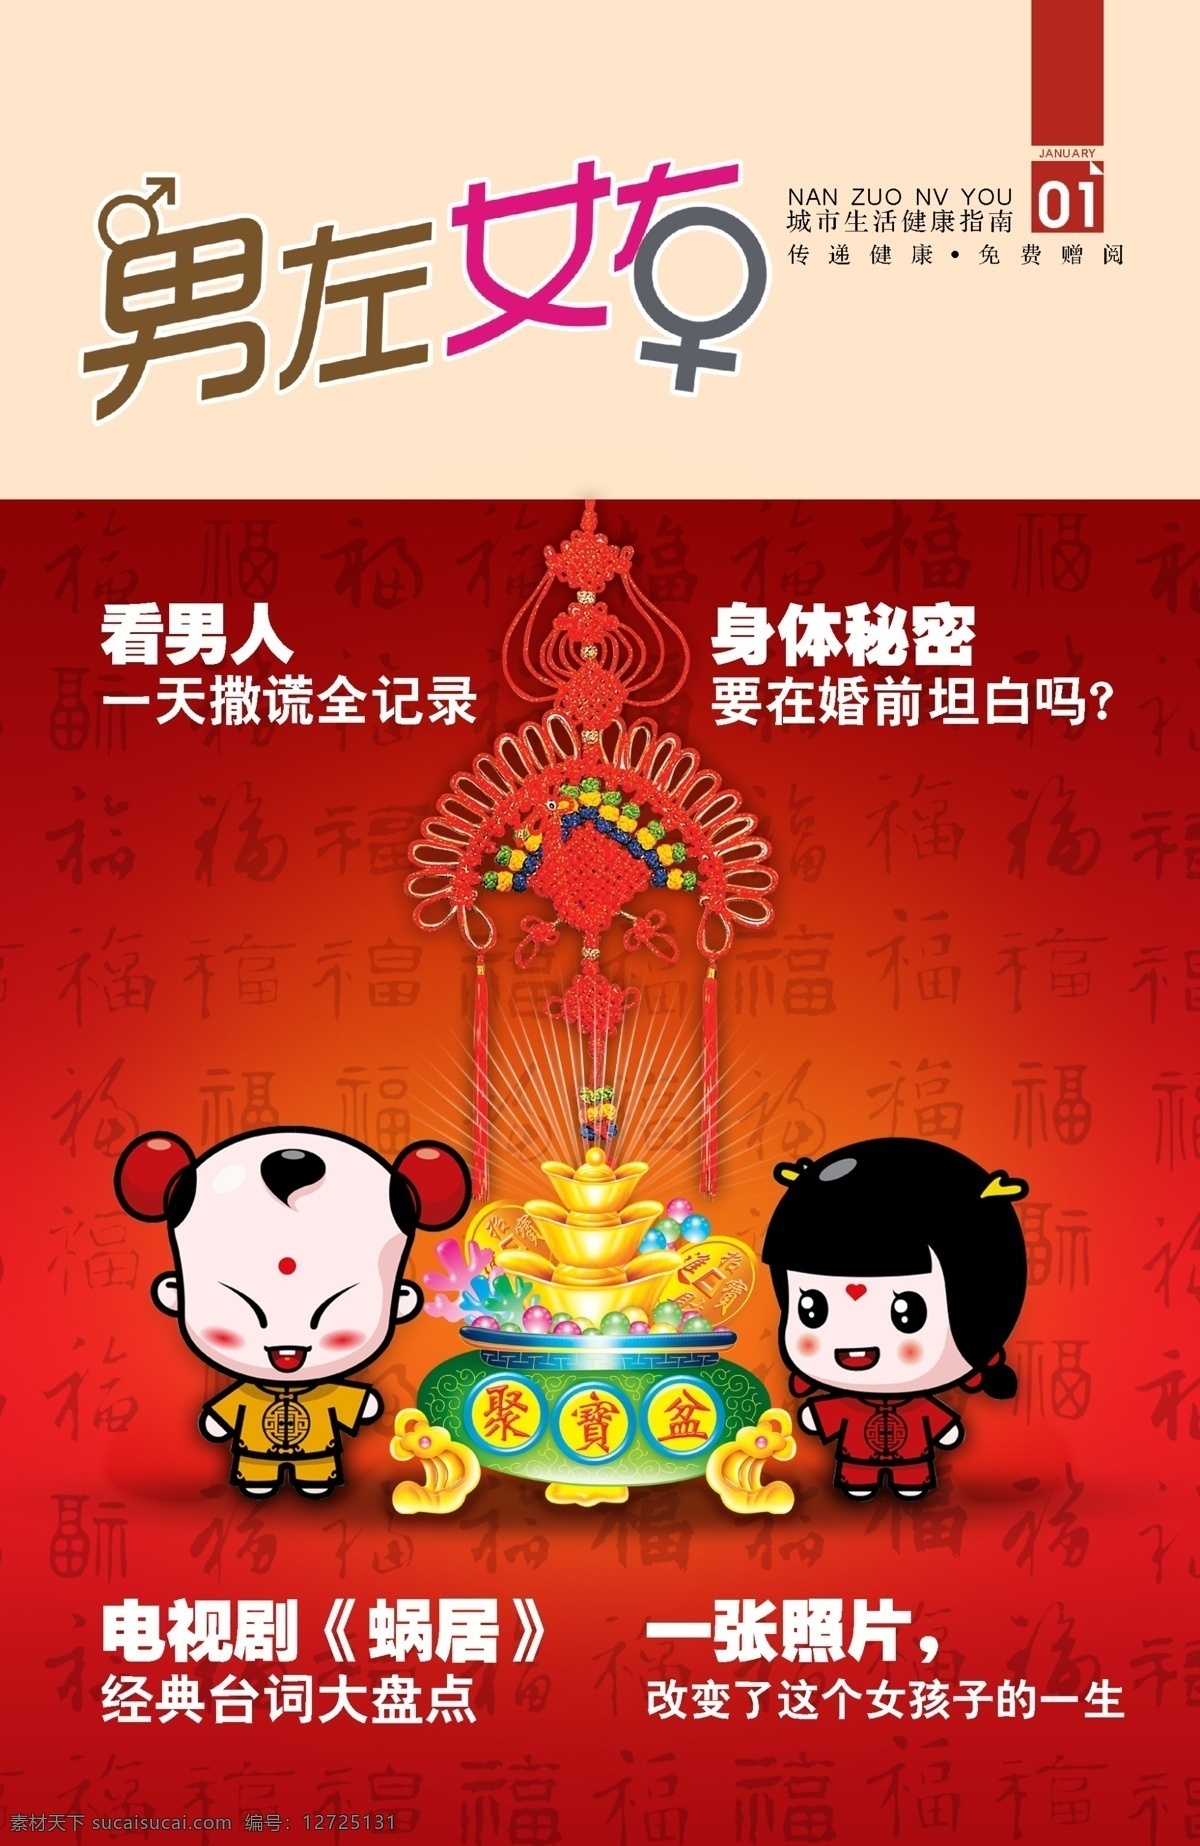 杂志封面 卡通 医疗杂志 男左女右 封面 福娃 中国结 杂志 画册设计 红色